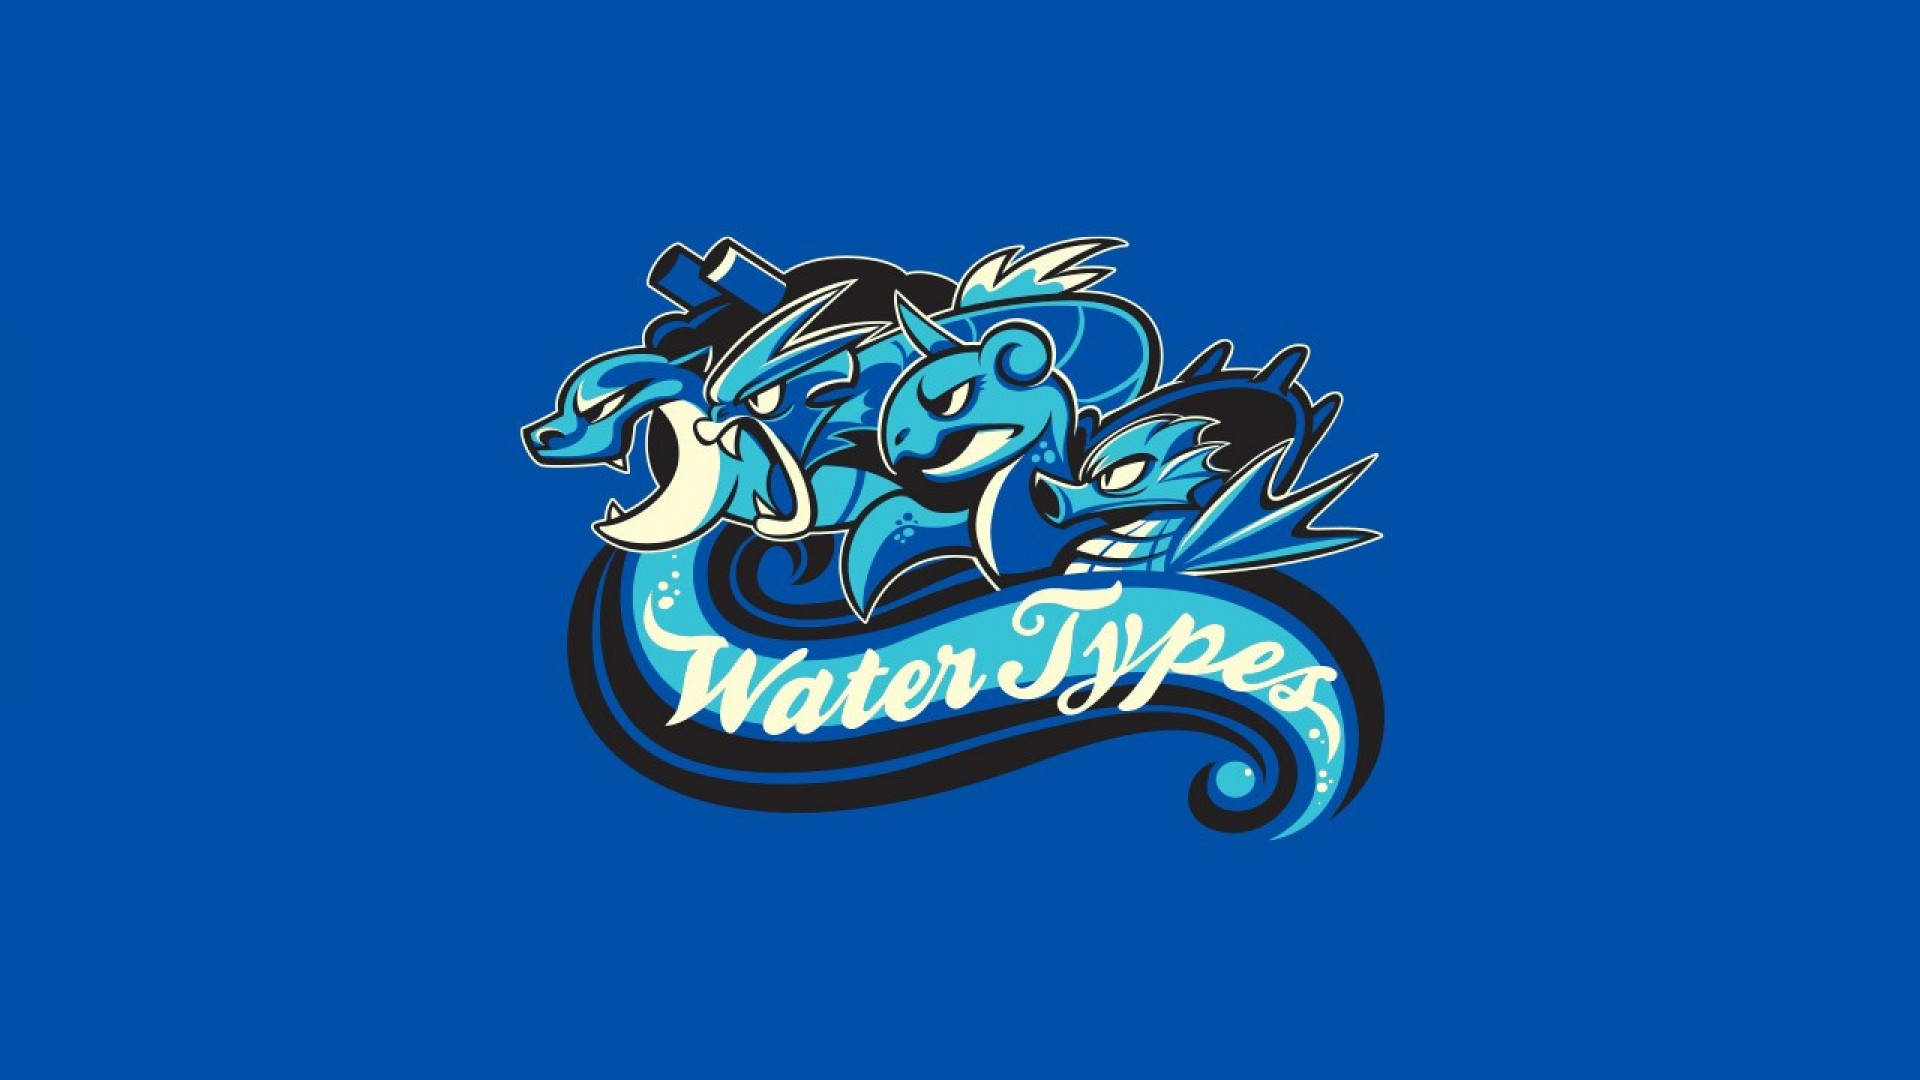 A Gyarados Bravley Swimming Through An Ocean Of Water Type Pokemon Background